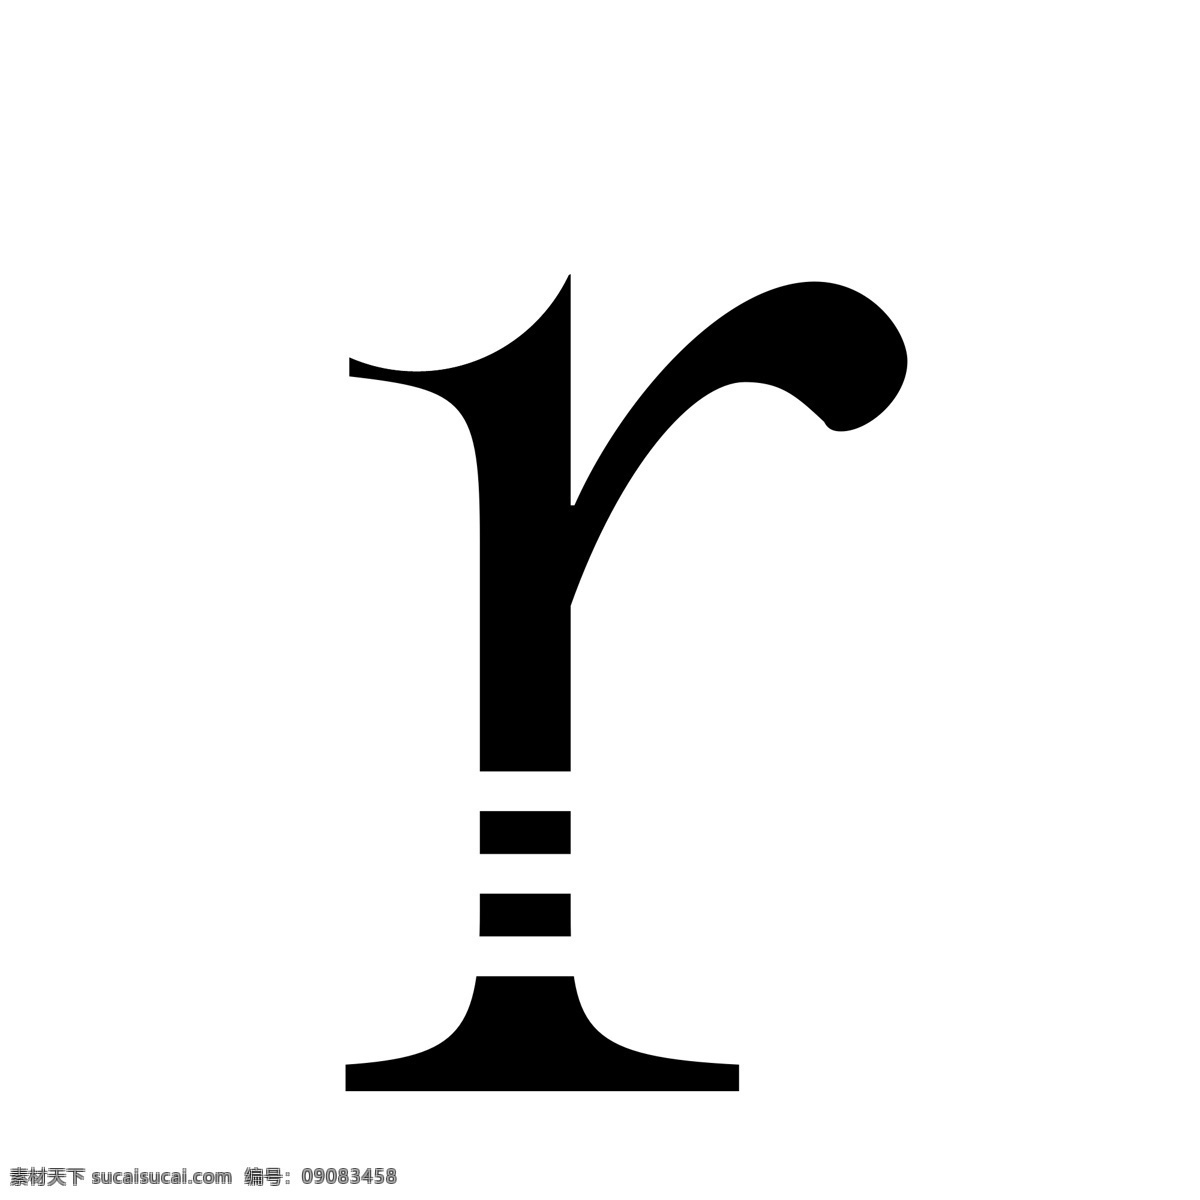 r字母图片 字母 创意 字母与几何 字母联想 分层